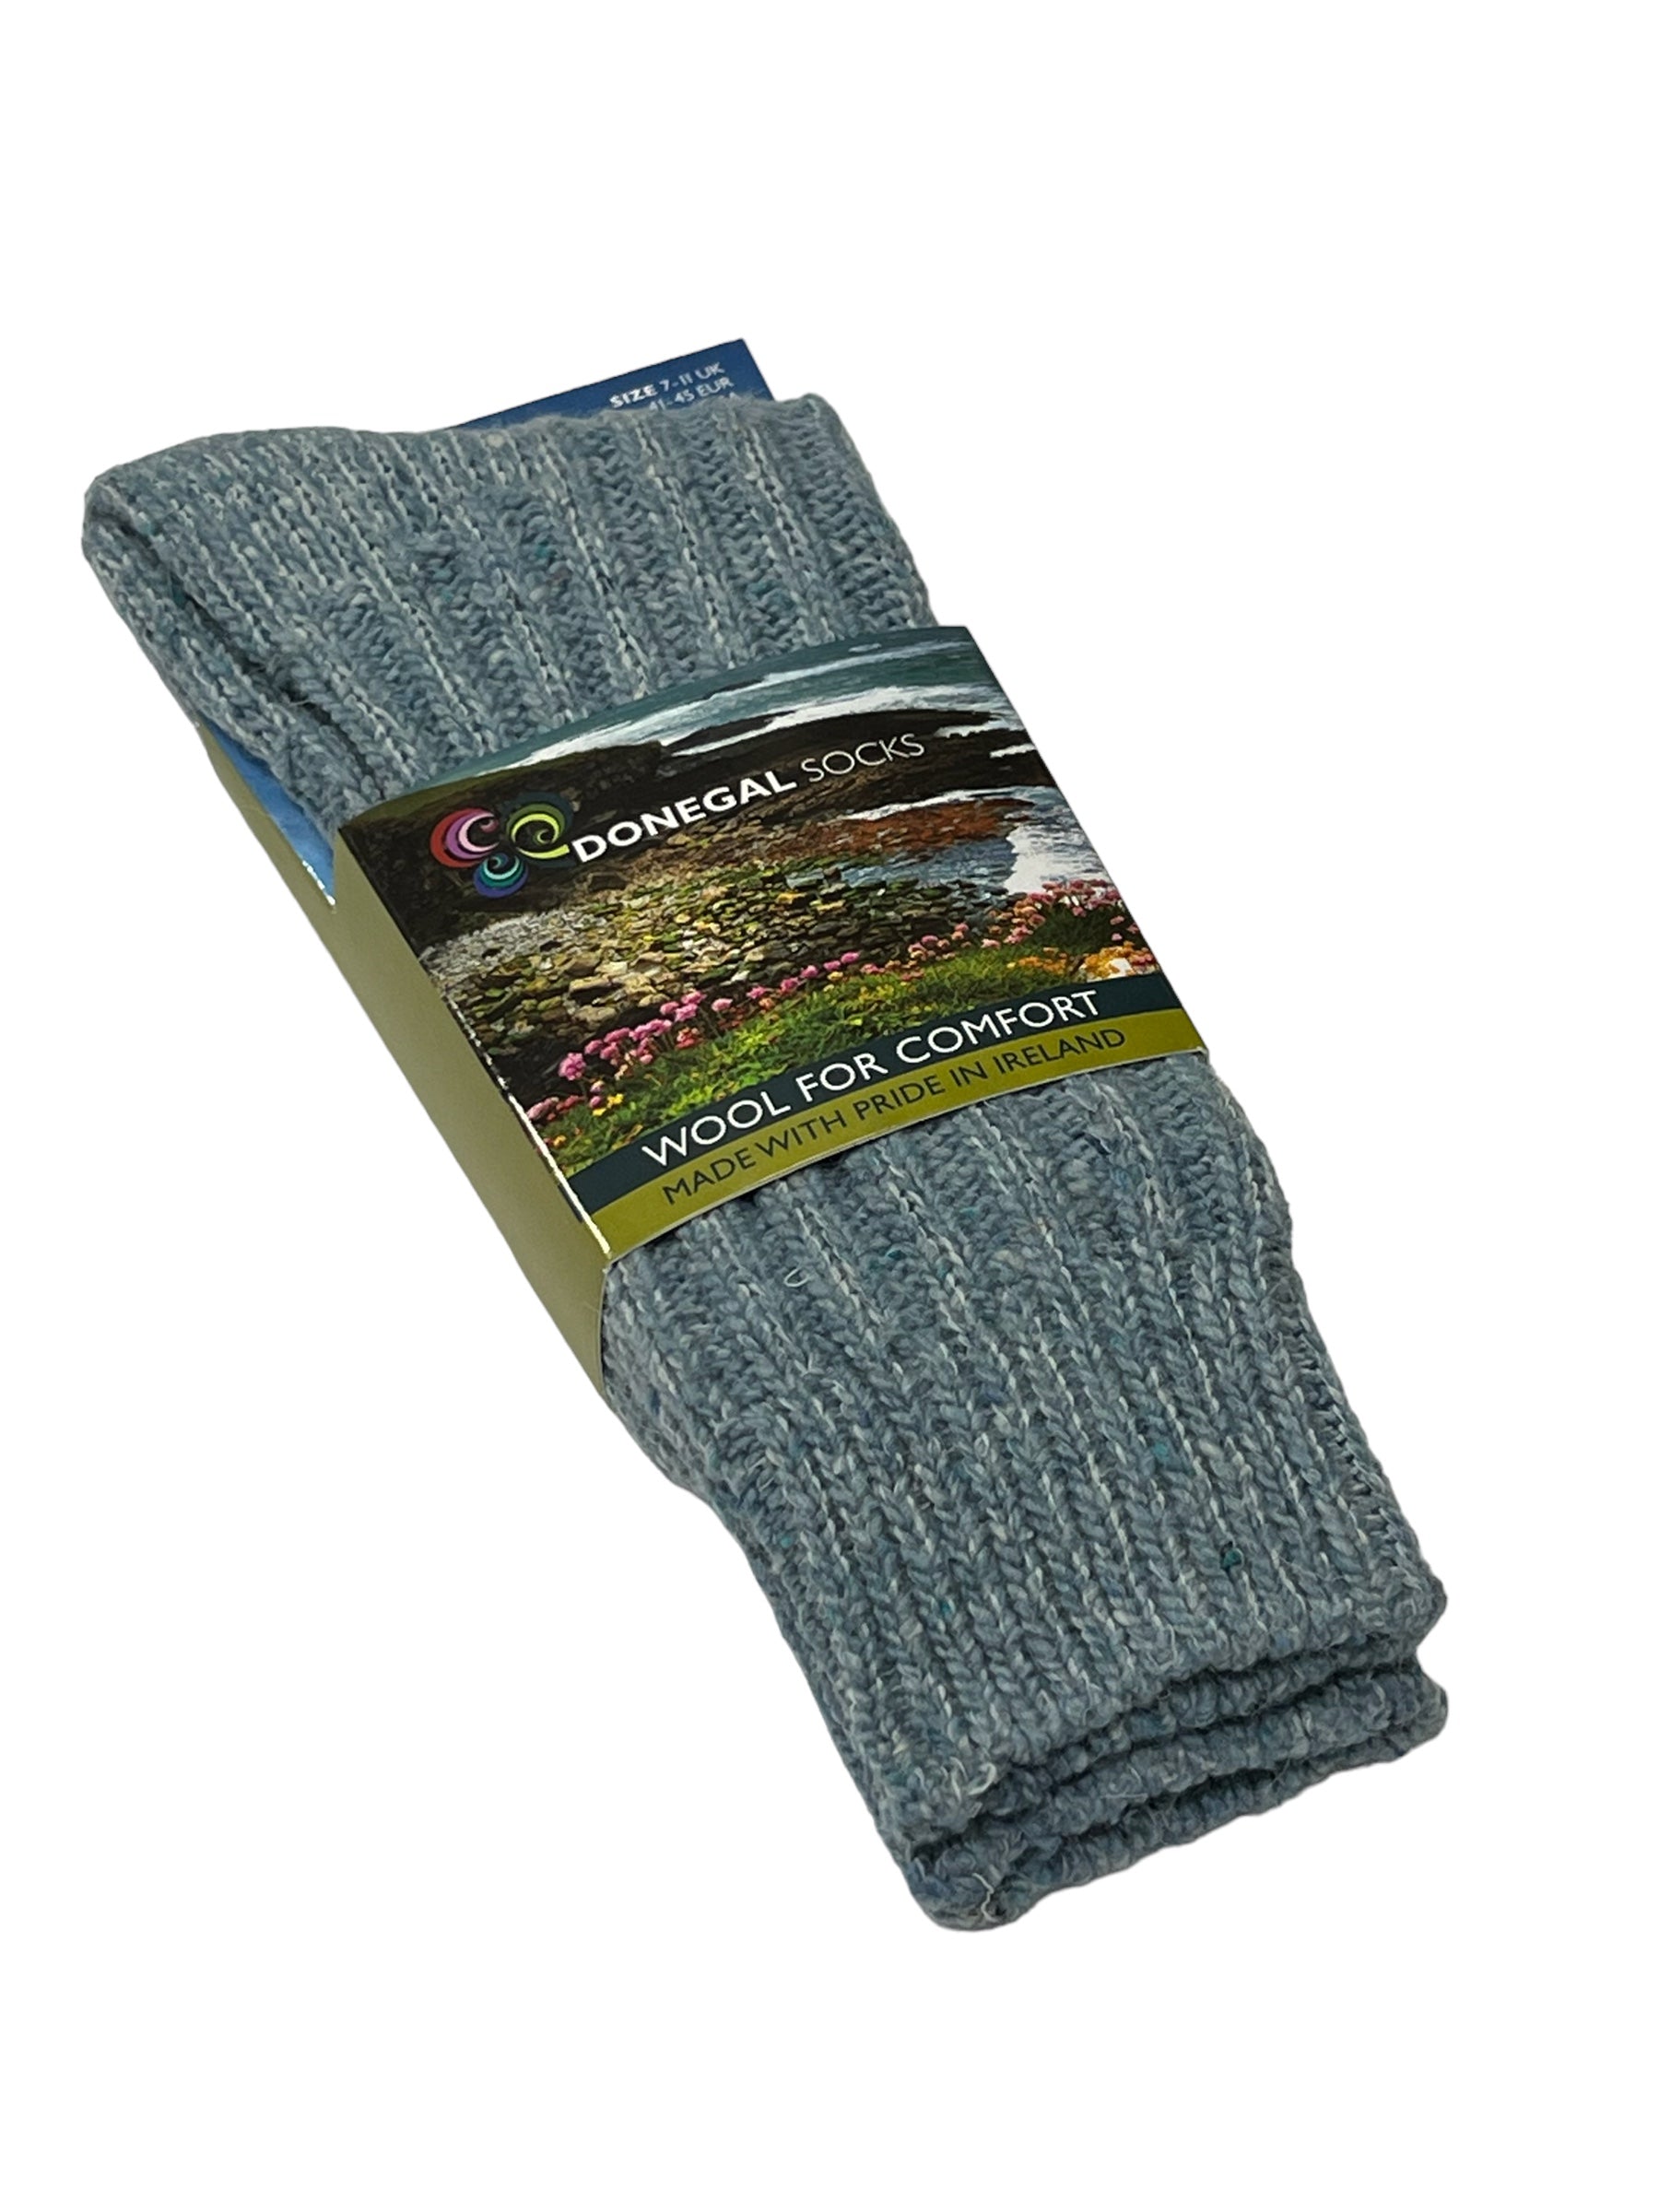 Donegal Fleece Lined Wool Socks - Irish Blackberry